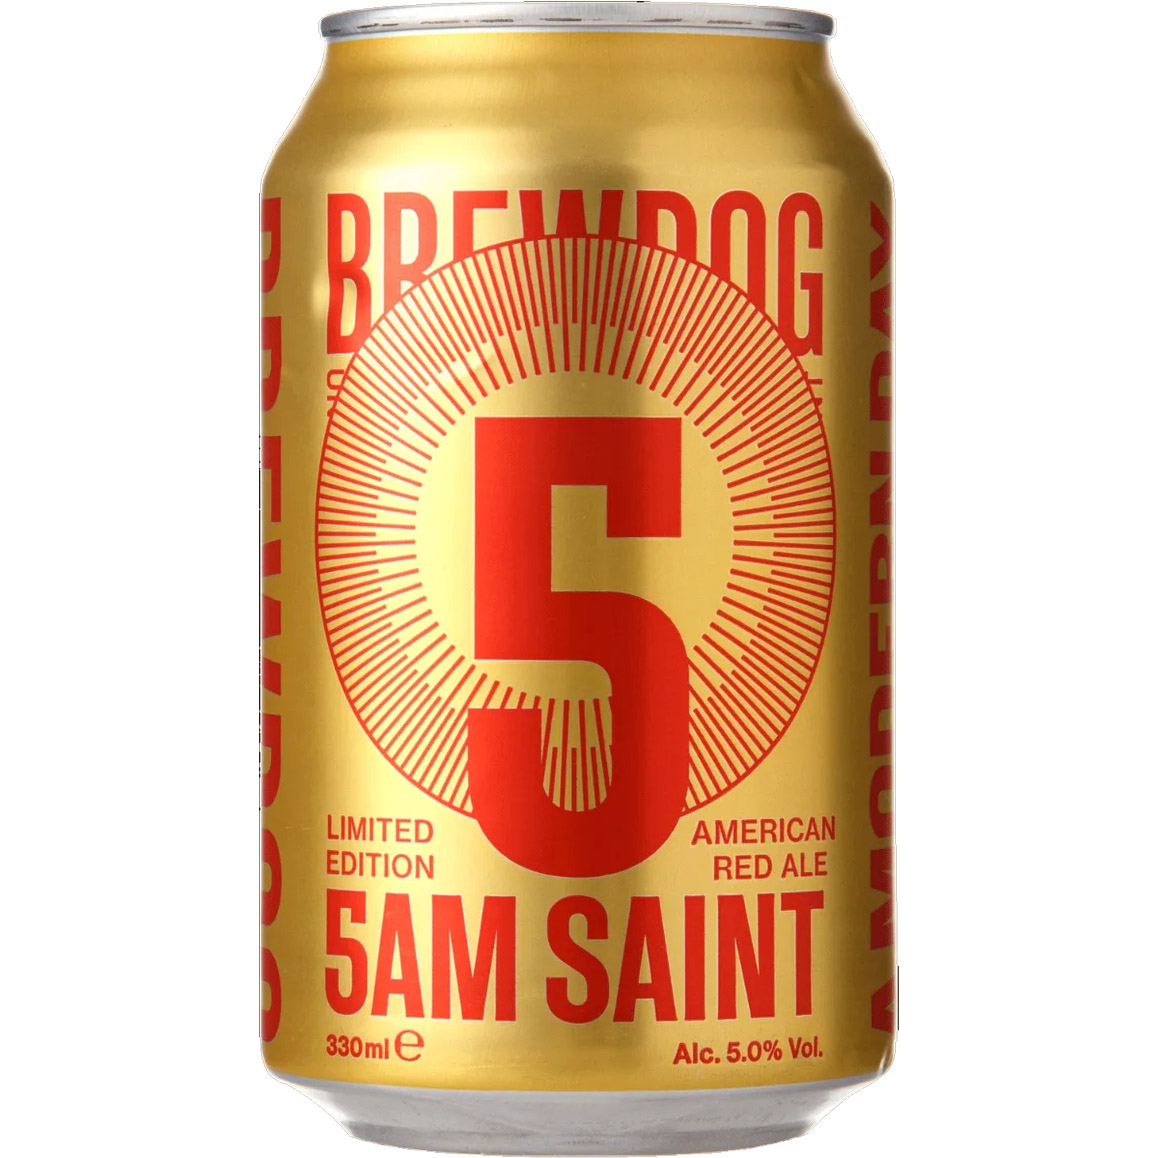 Пиво BrewDog 5AM Saint янтарне 5% 0.33 л з/б - фото 1